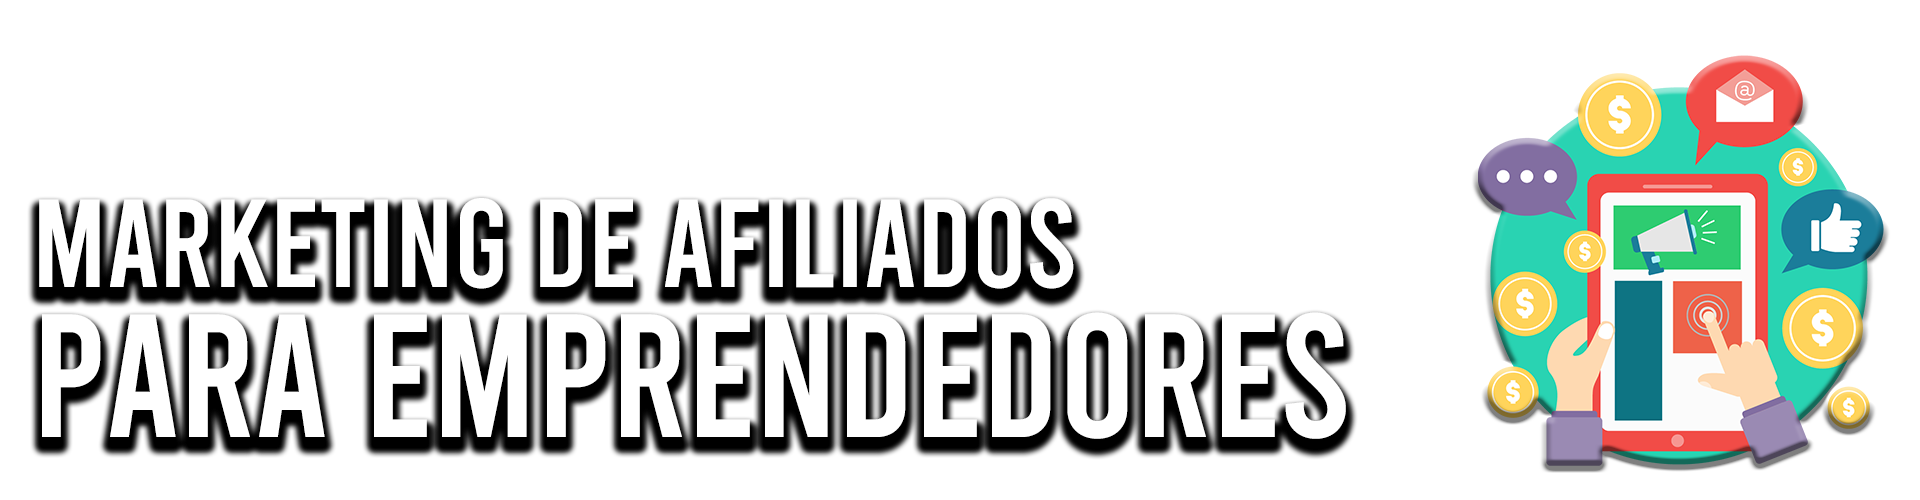 MARKETING DE AFILIADOS PARA EMPRENDEDORES ALEJANDRO NIETO MEDINA